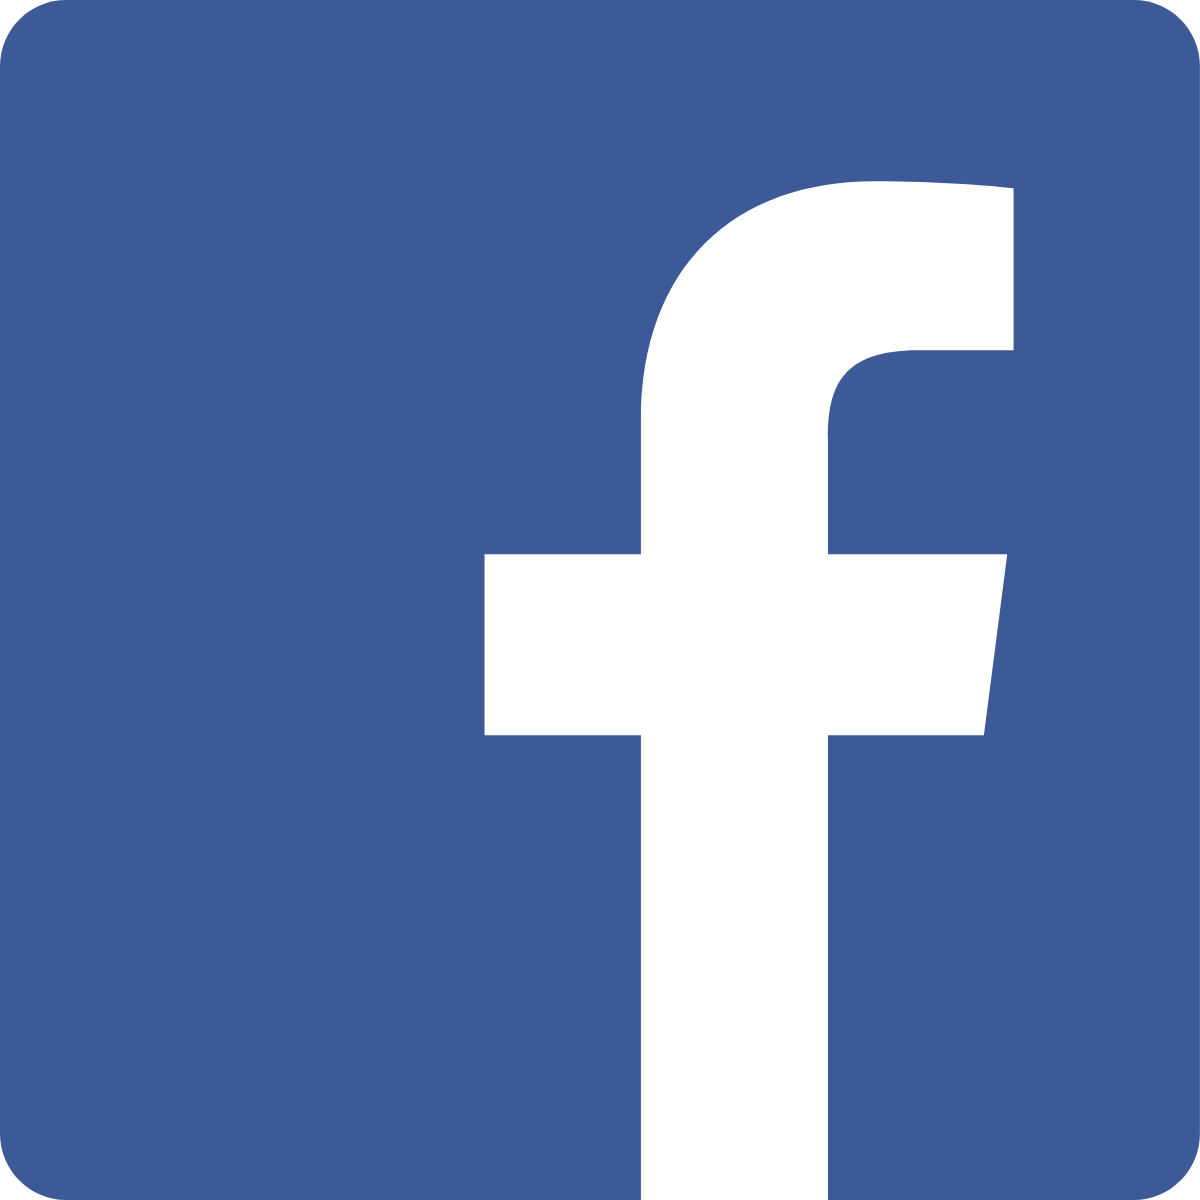 FC-Facebook-logo.png